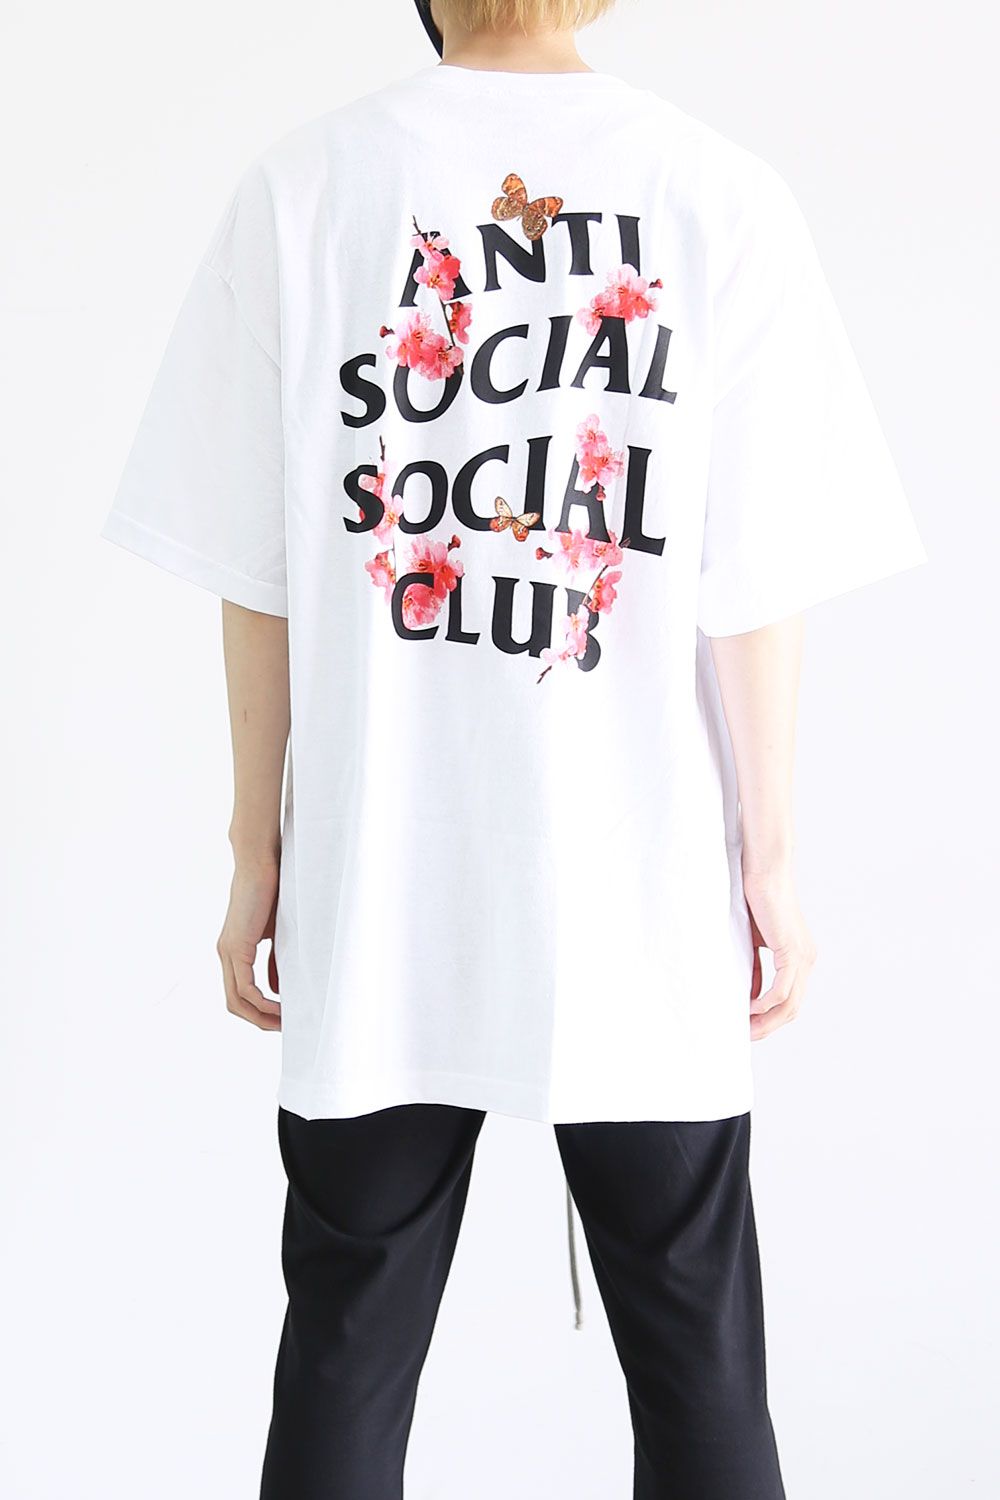 Anti Social Social Club - KKOCH BLACK TEE / ブラック | Tempt